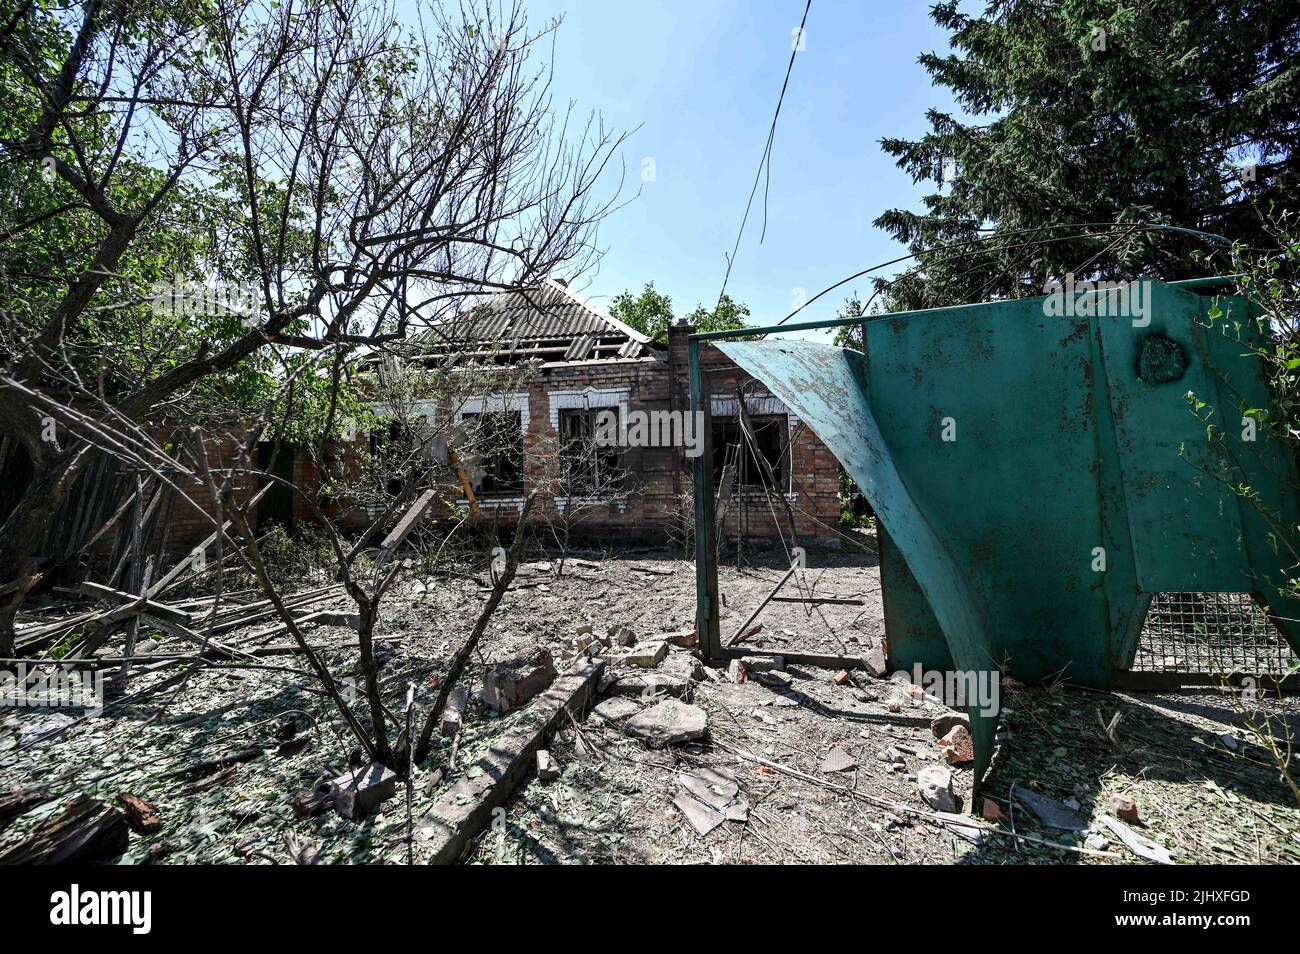 Ein zerstörtes Haus, in dem ein 70-jähriger Mann und eine 65-jährige Frau an den Folgen des russischen Beschuss starben, ist in Nikopol, Region Dnipropetrowsk, Zentralukraine, am 20. Juli 2022 abgebildet. Die Stadt wird täglich von russischen Truppen aus dem vorübergehend besetzten Enerhodar, Region Saporischschschja, beschossen. Foto von Dmytro Smolyenko/Ukrinform/ABACAPRESS.COM Stockfoto